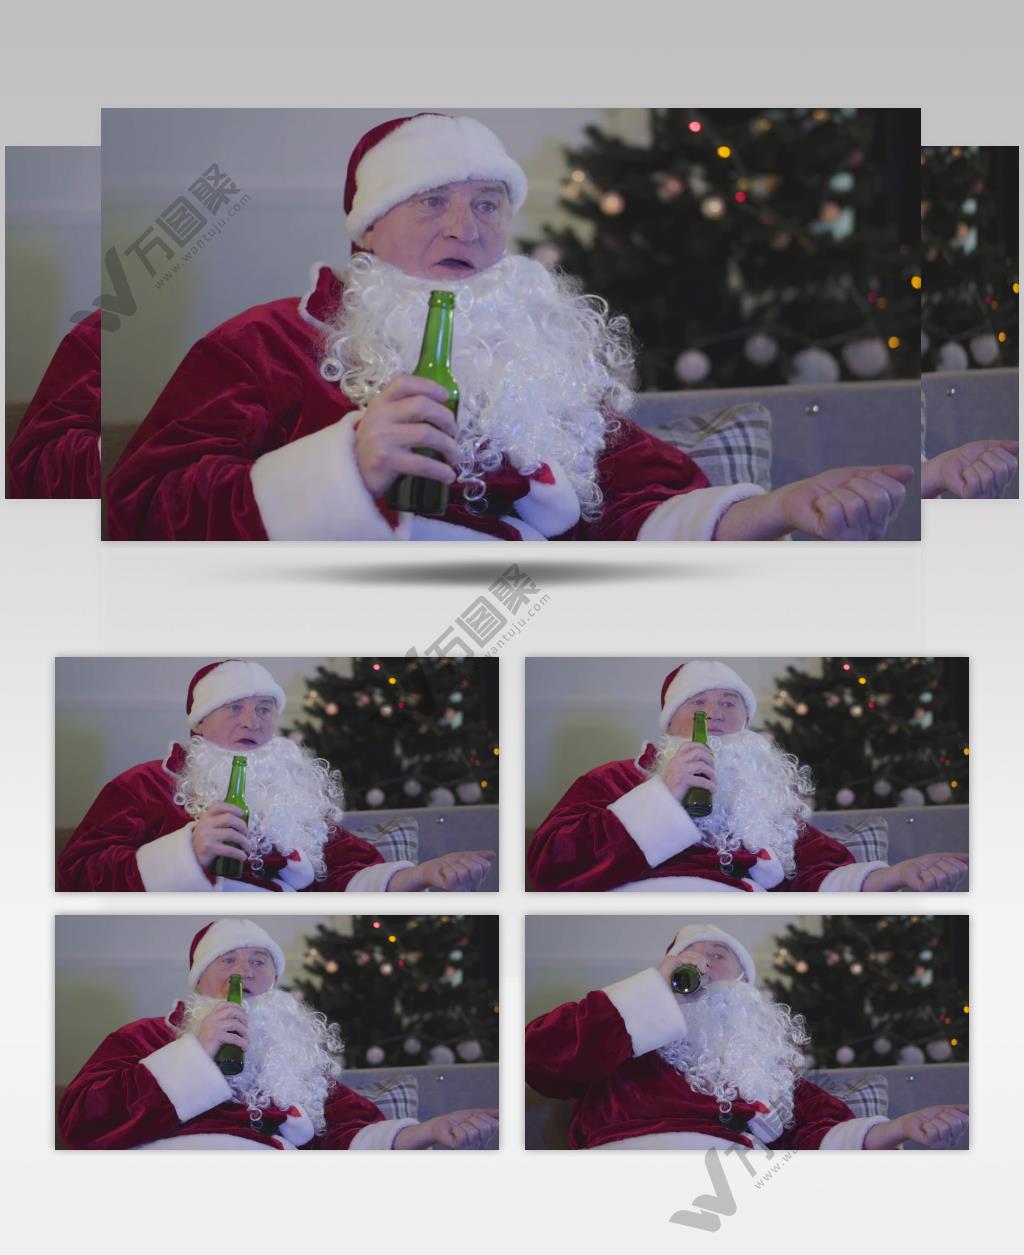 穿着圣诞老人服装的男人在沙发上喝啤酒